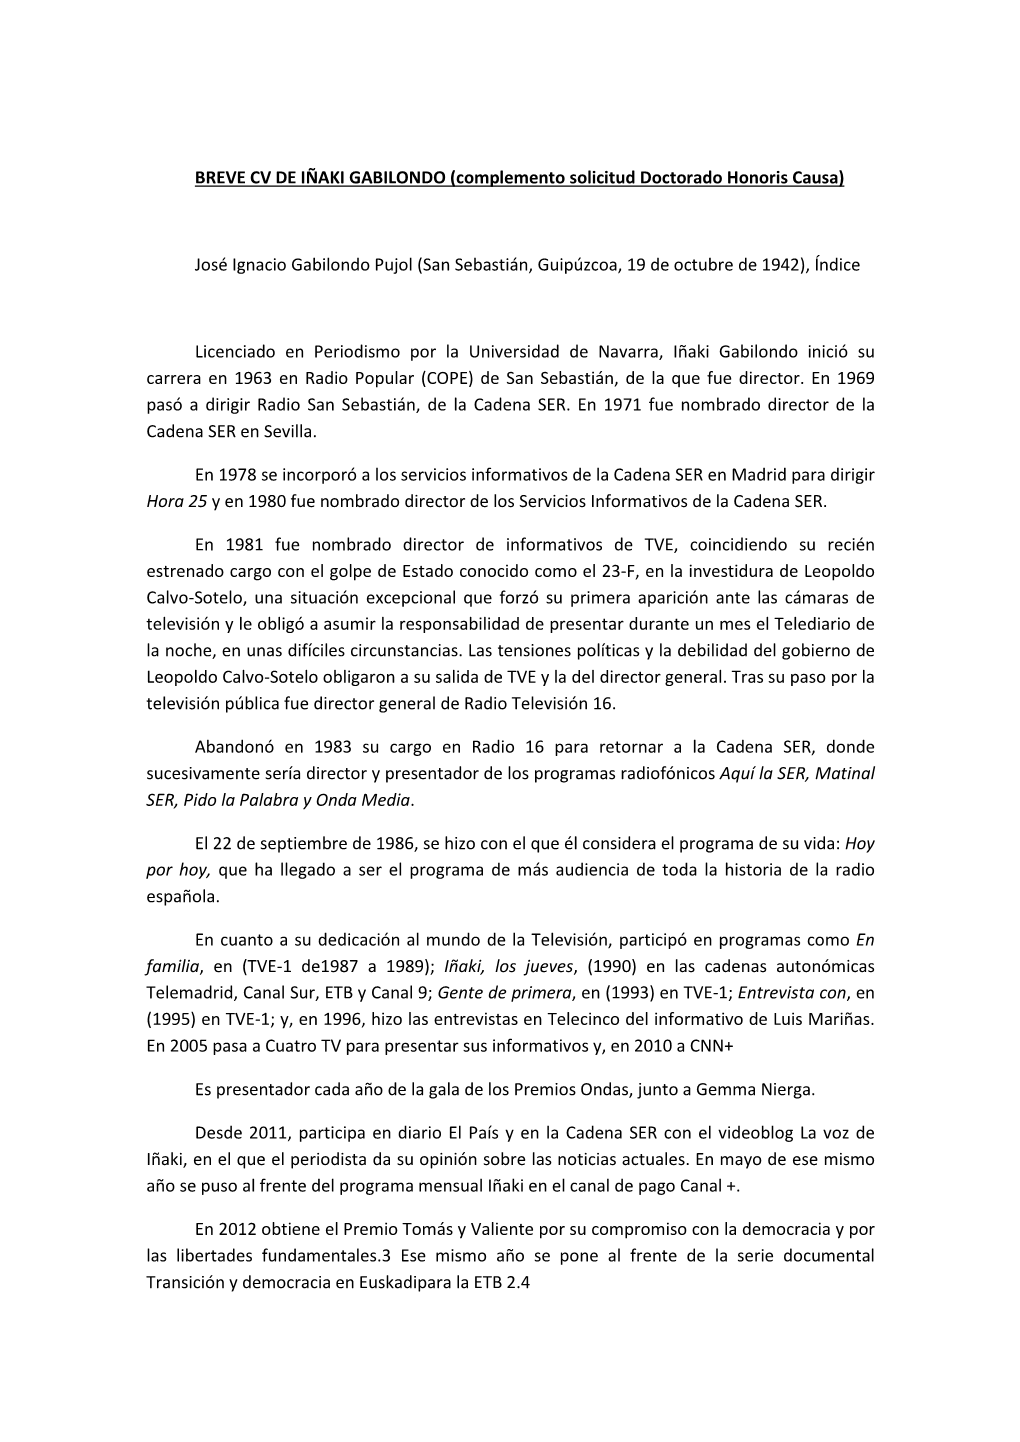 BREVE CV DE IÑAKI GABILONDO (Complemento Solicitud Doctorado Honoris Causa)